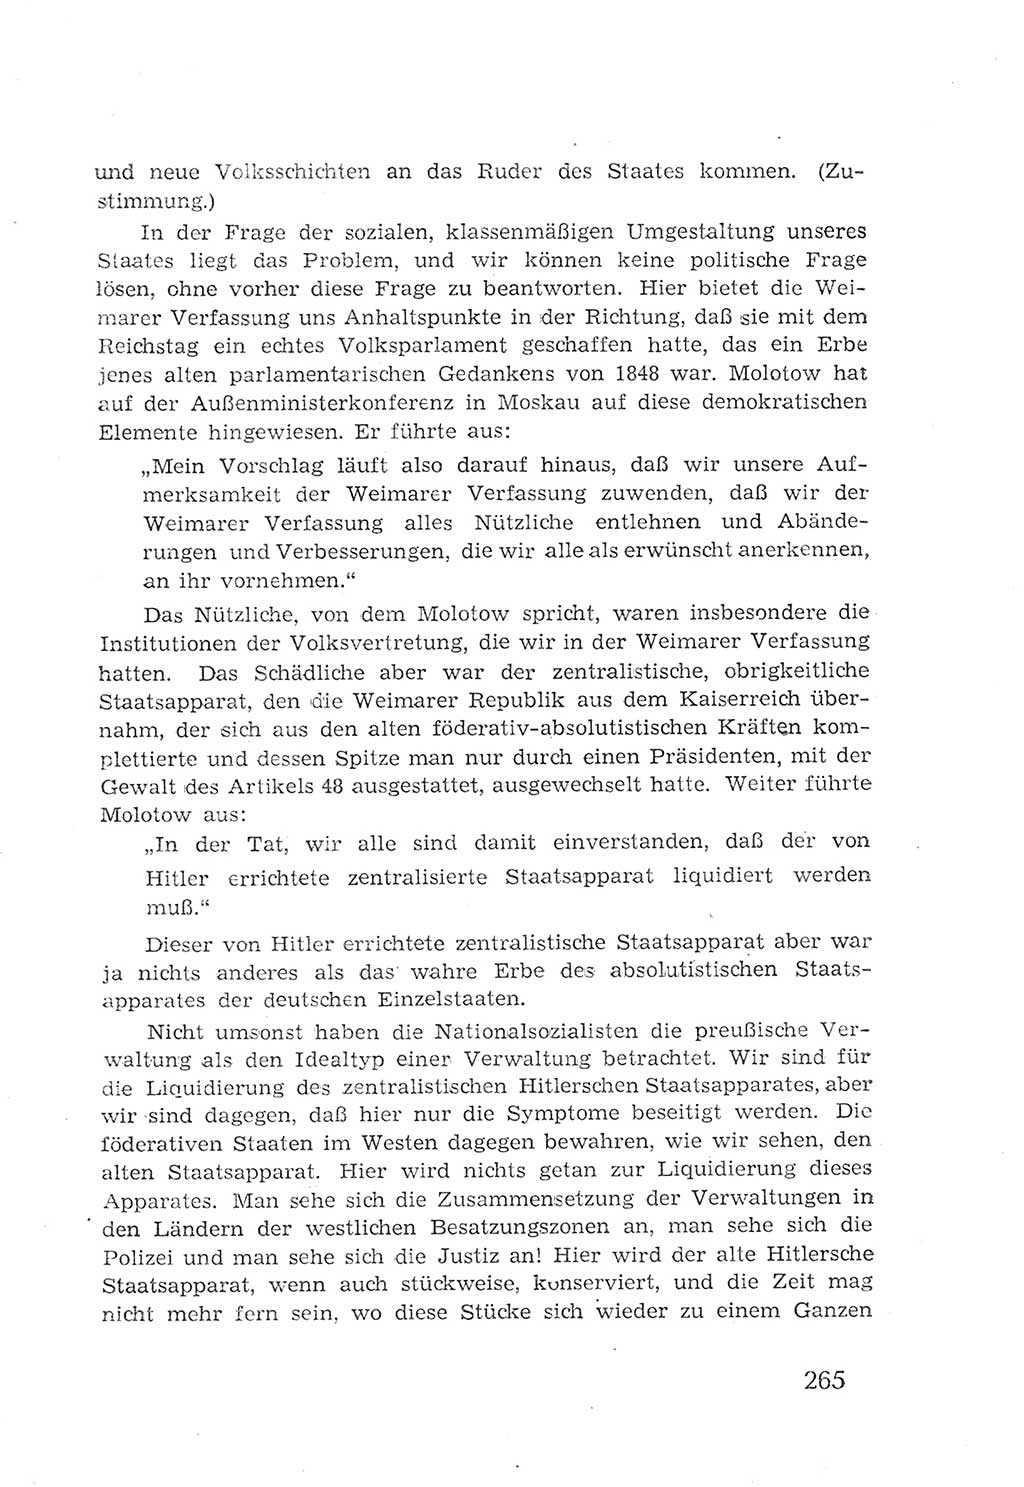 Protokoll der Verhandlungen des 2. Parteitages der Sozialistischen Einheitspartei Deutschlands (SED) [Sowjetische Besatzungszone (SBZ) Deutschlands] 1947, Seite 265 (Prot. Verh. 2. PT SED SBZ Dtl. 1947, S. 265)